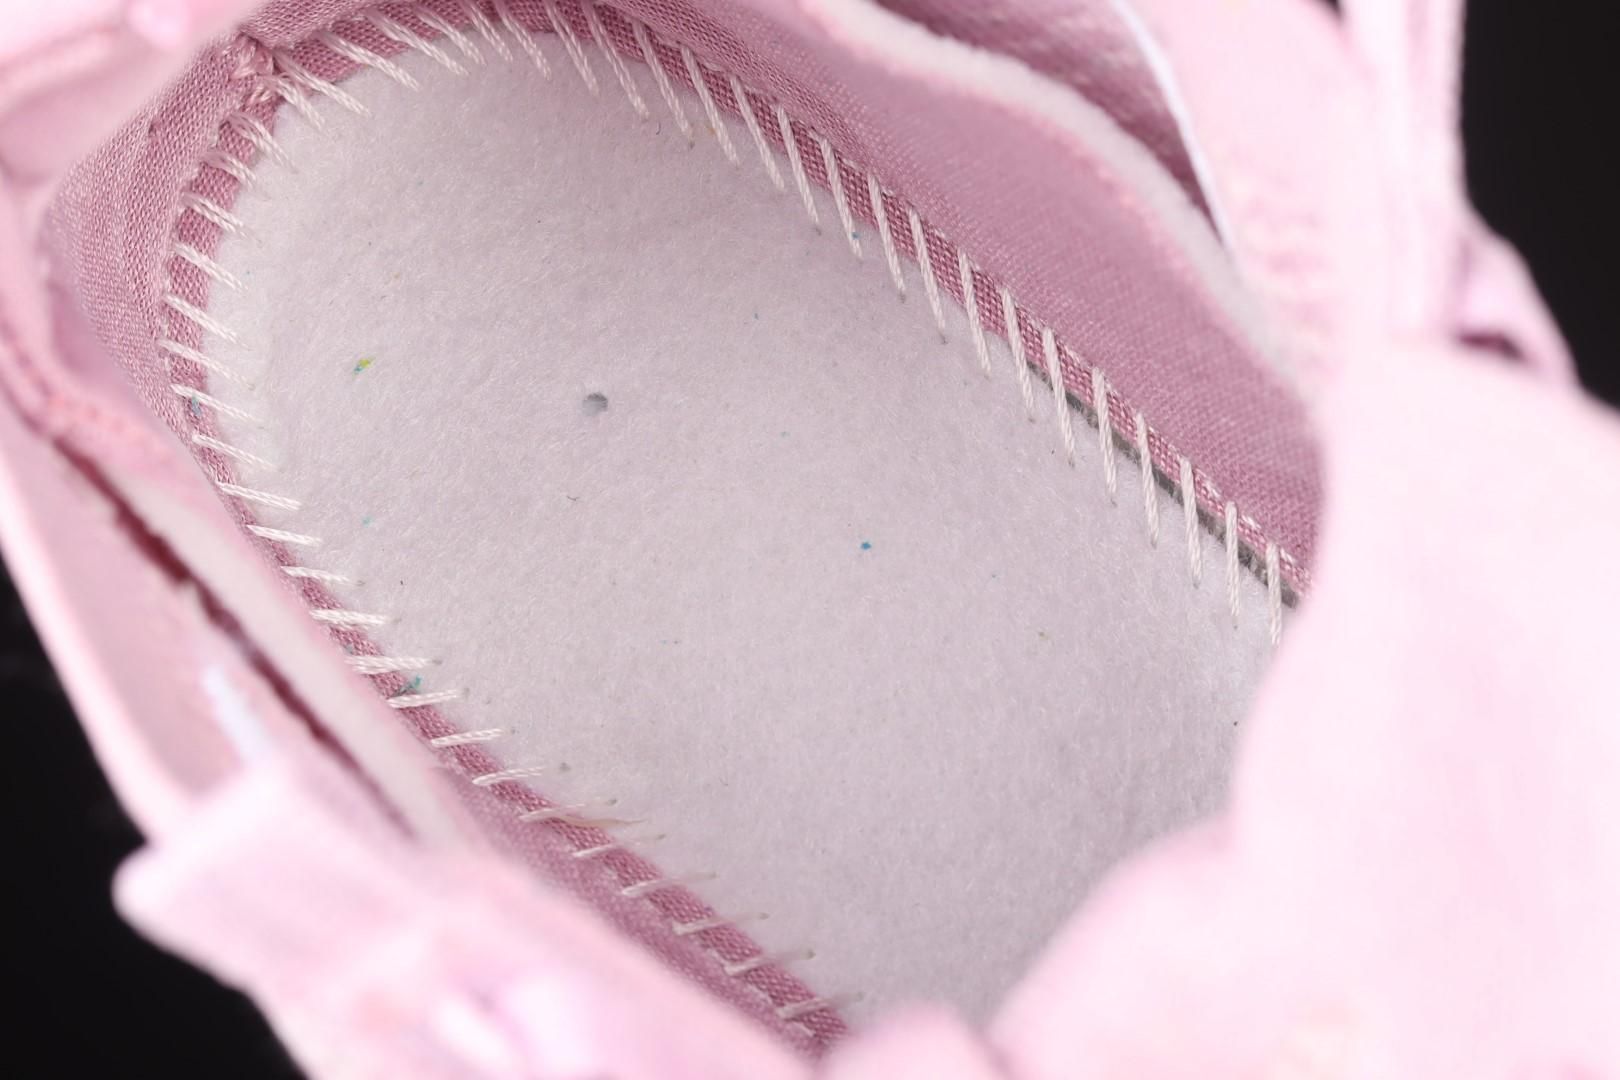 NikeWMNS Air VaporMax 2021 - Light Arctic Pink